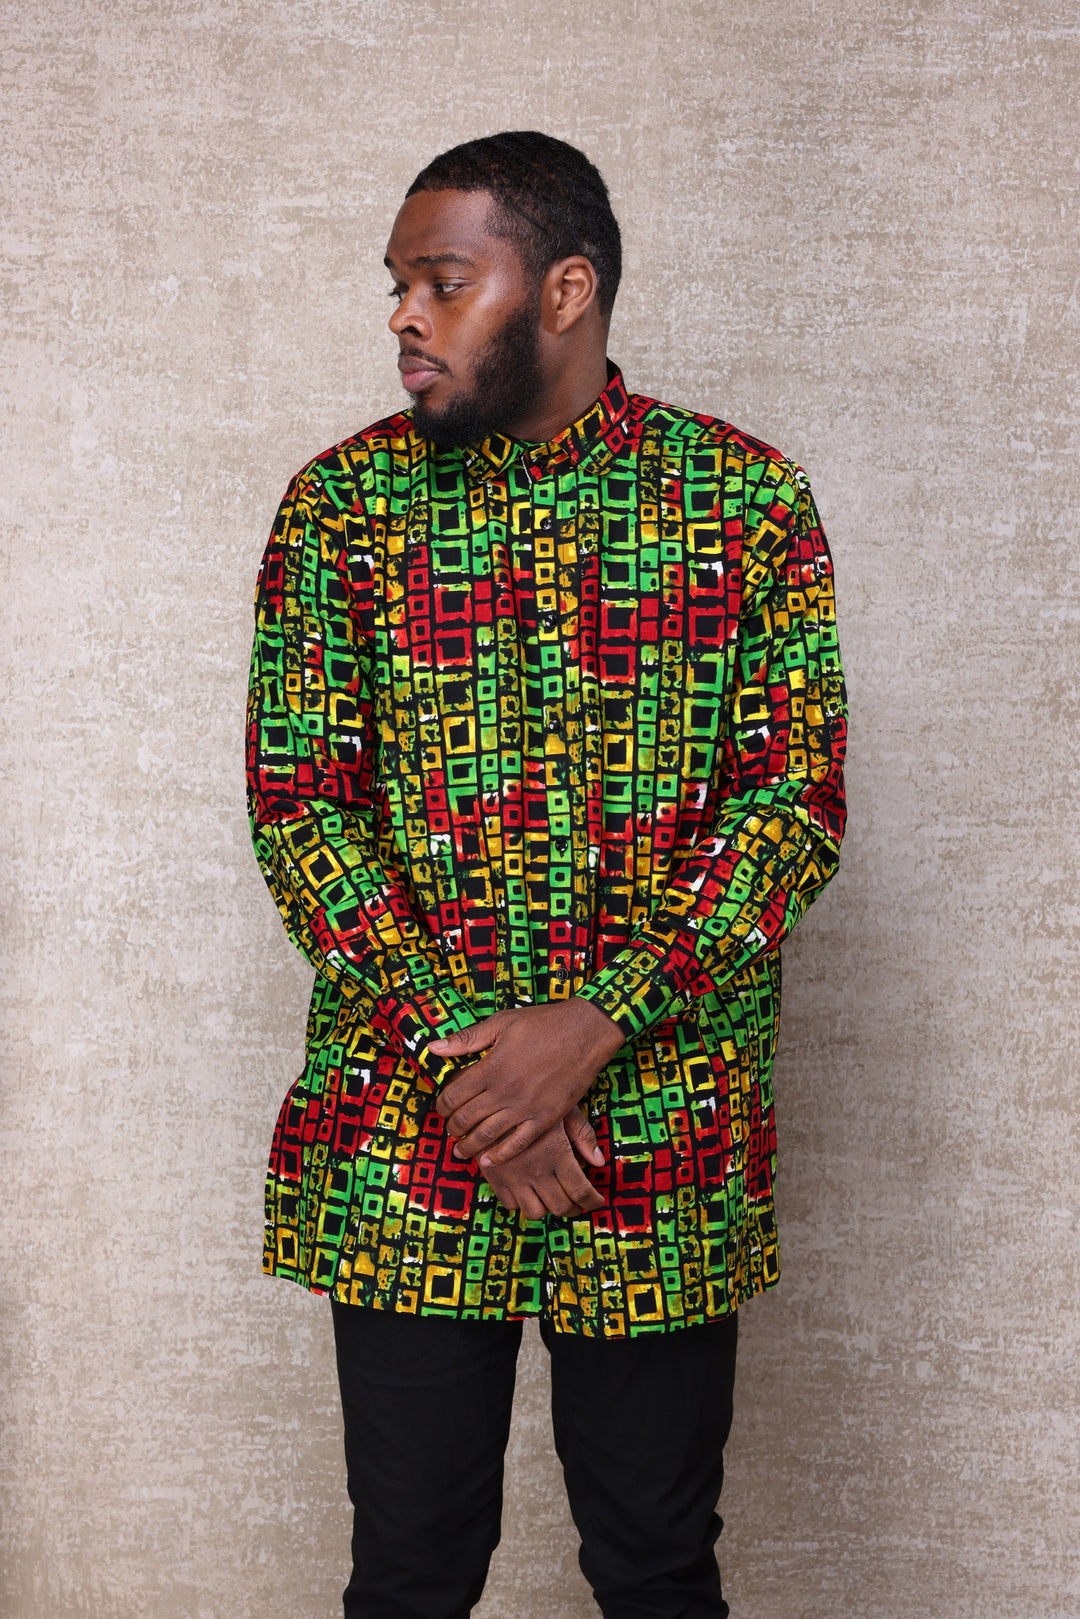 African print long sleeve men shirt.